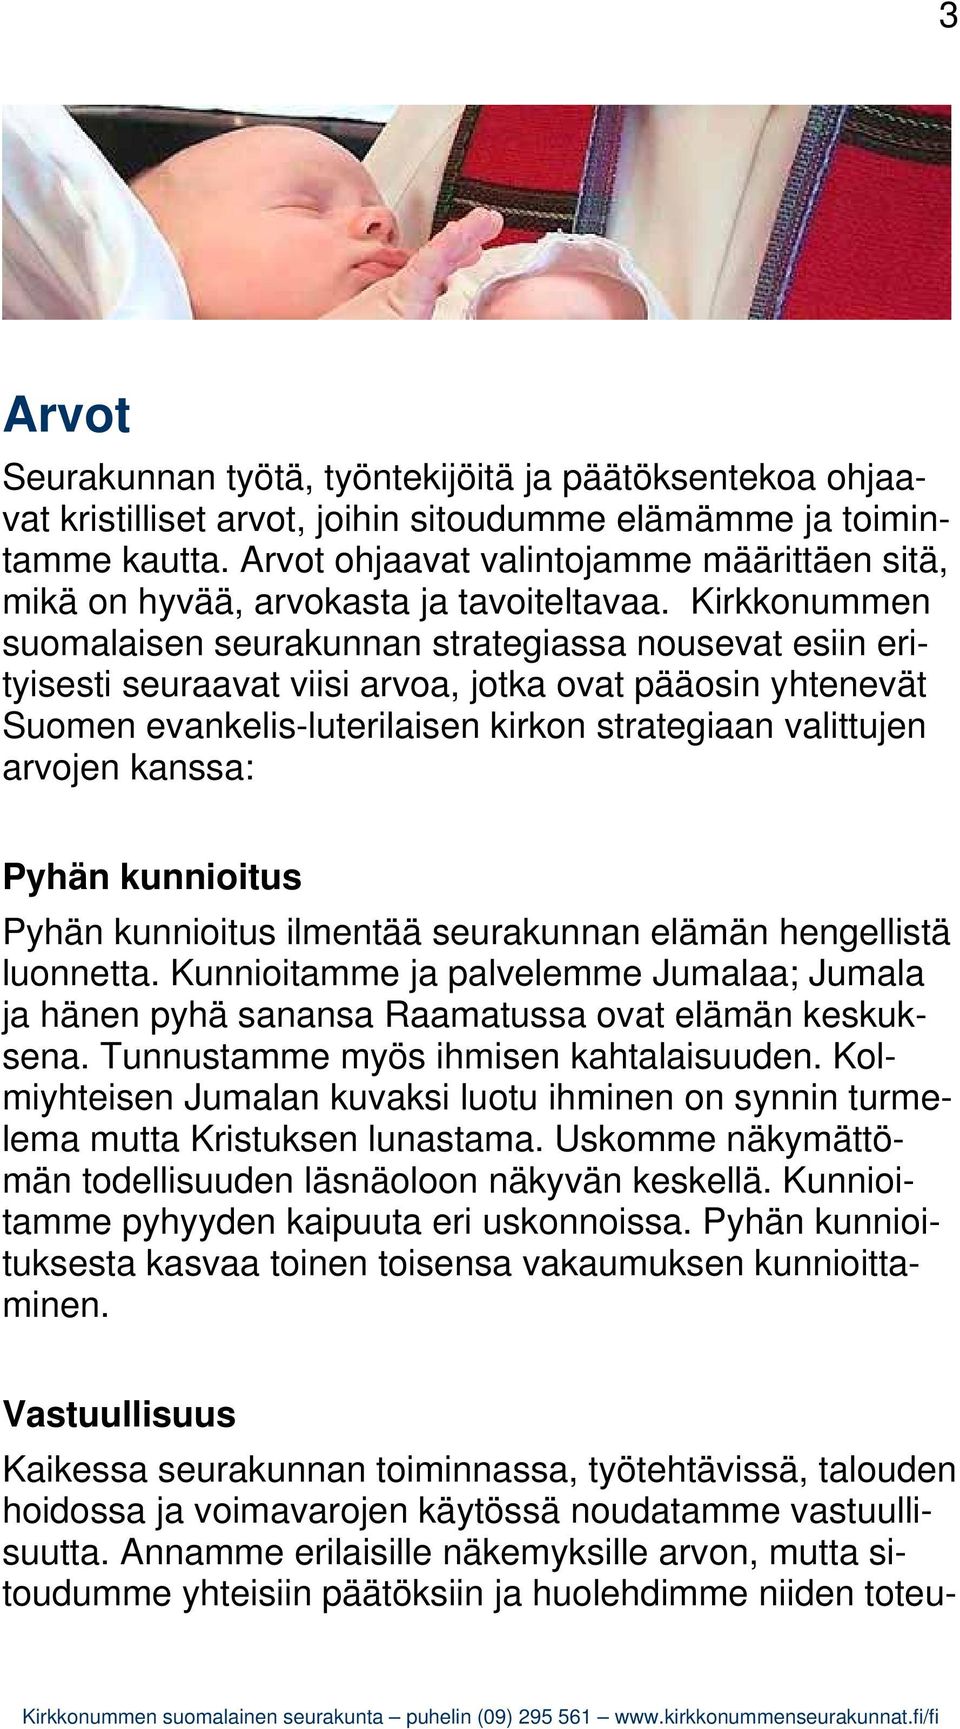 Kirkkonummen suomalaisen seurakunnan strategiassa nousevat esiin erityisesti seuraavat viisi arvoa, jotka ovat pääosin yhtenevät Suomen evankelis-luterilaisen kirkon strategiaan valittujen arvojen